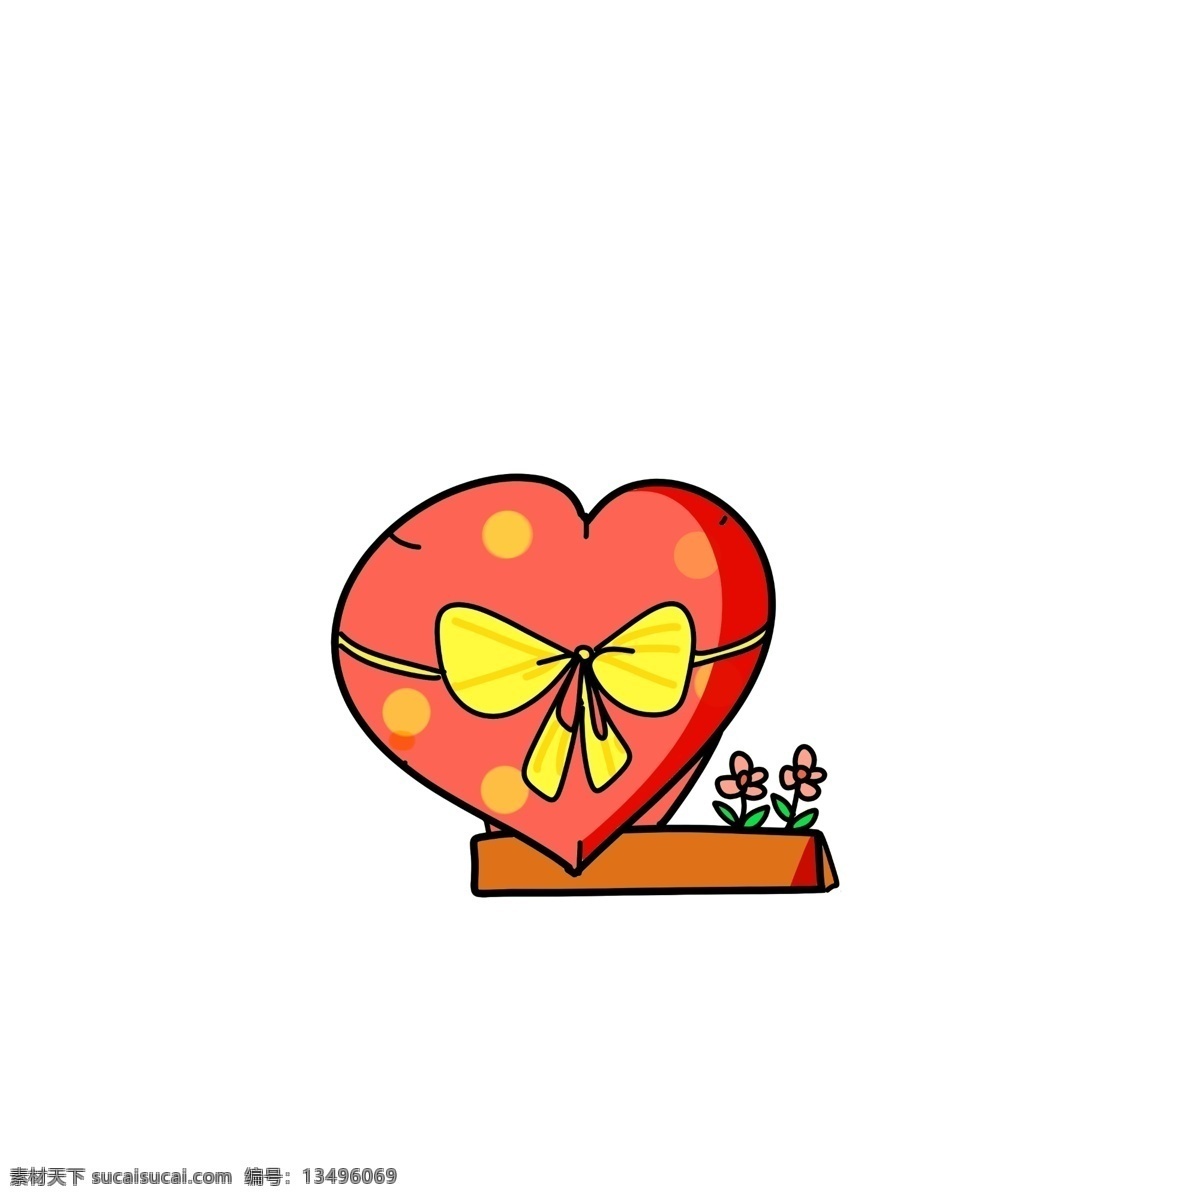 红色 卡通 巧克力 插画 手绘 礼盒 卡通巧克力 手绘巧克力 爱心 黄色蝴蝶结 粉色的花朵